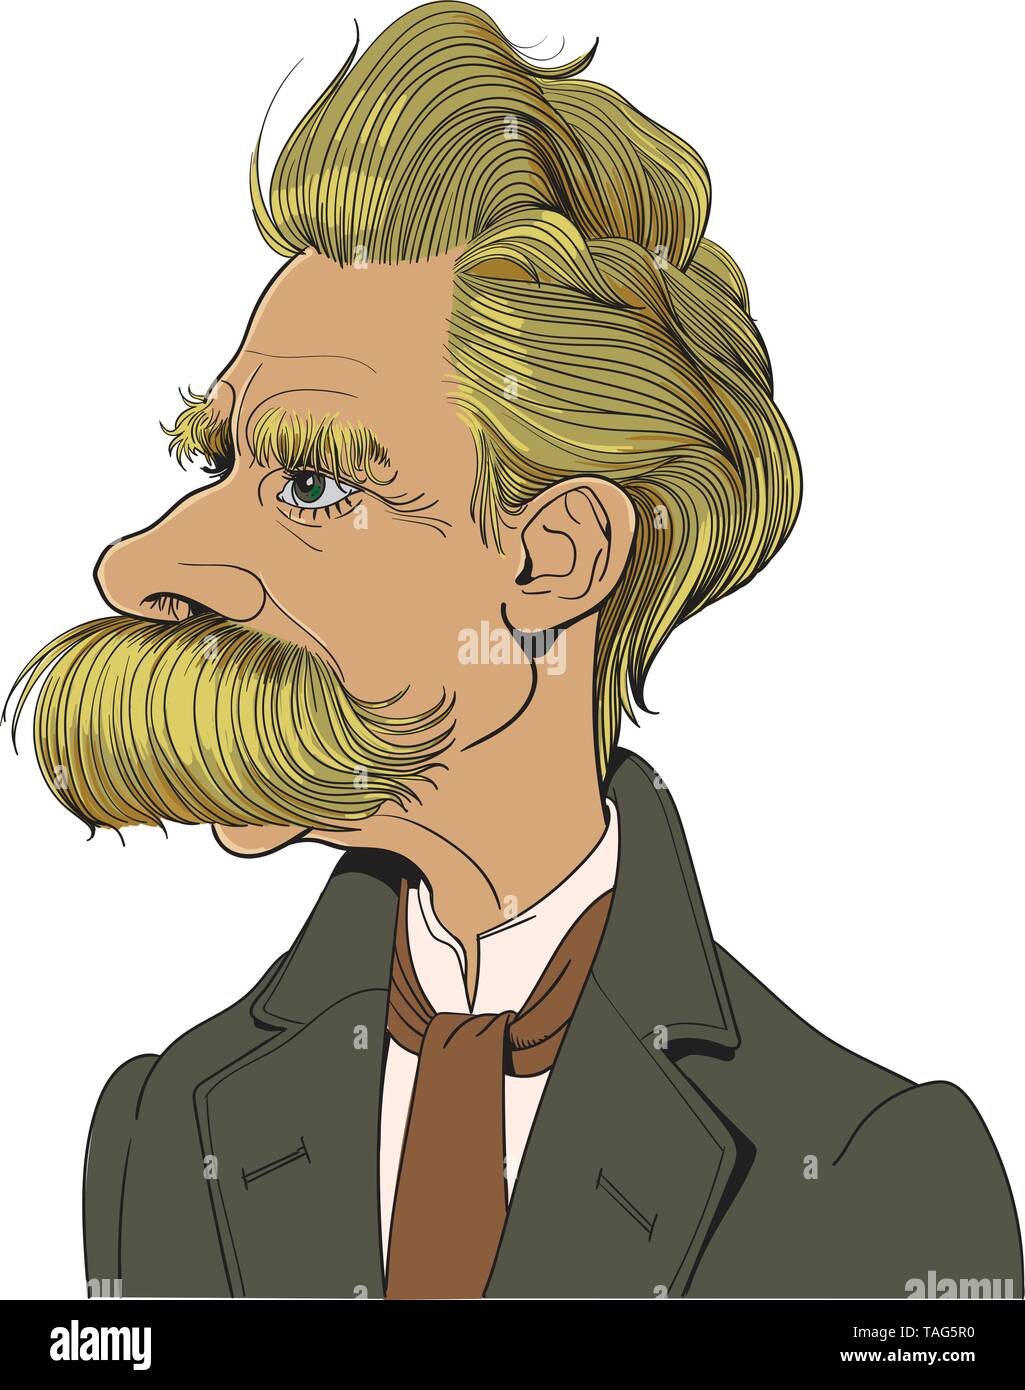 Friedrich Nietzsche (1844-1900) Porträt in Line Art. Er war deutscher Philosoph, Philologe, Dichter, Komponist und klassischer Philologe. Bearbeitbare Layer. Stock Vektor